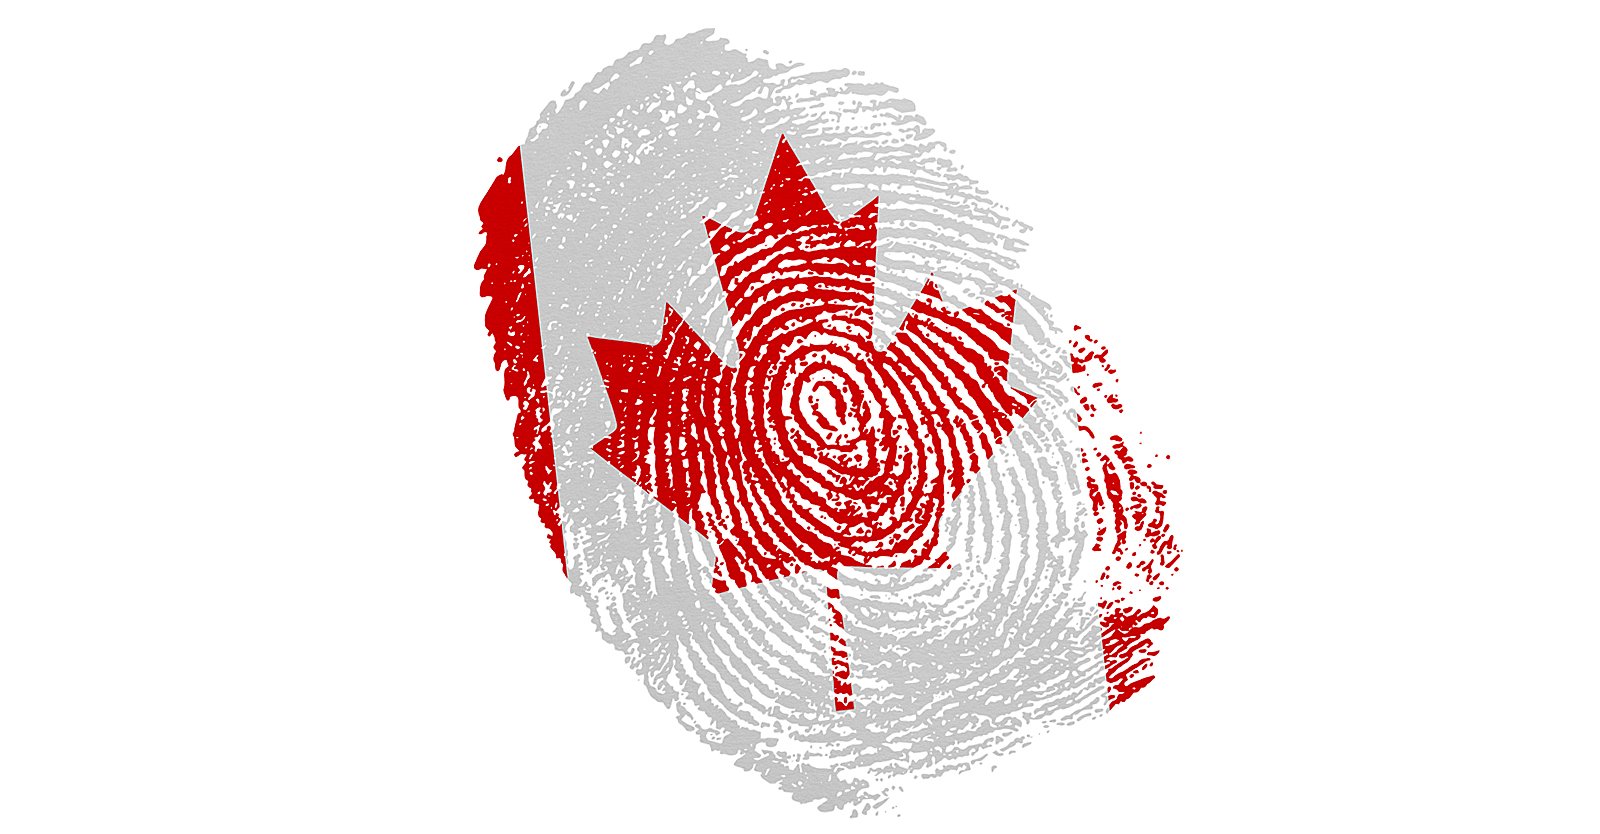 WEF の支援を受けて、カナダは連邦政府のデジタル ID プログラムを開始